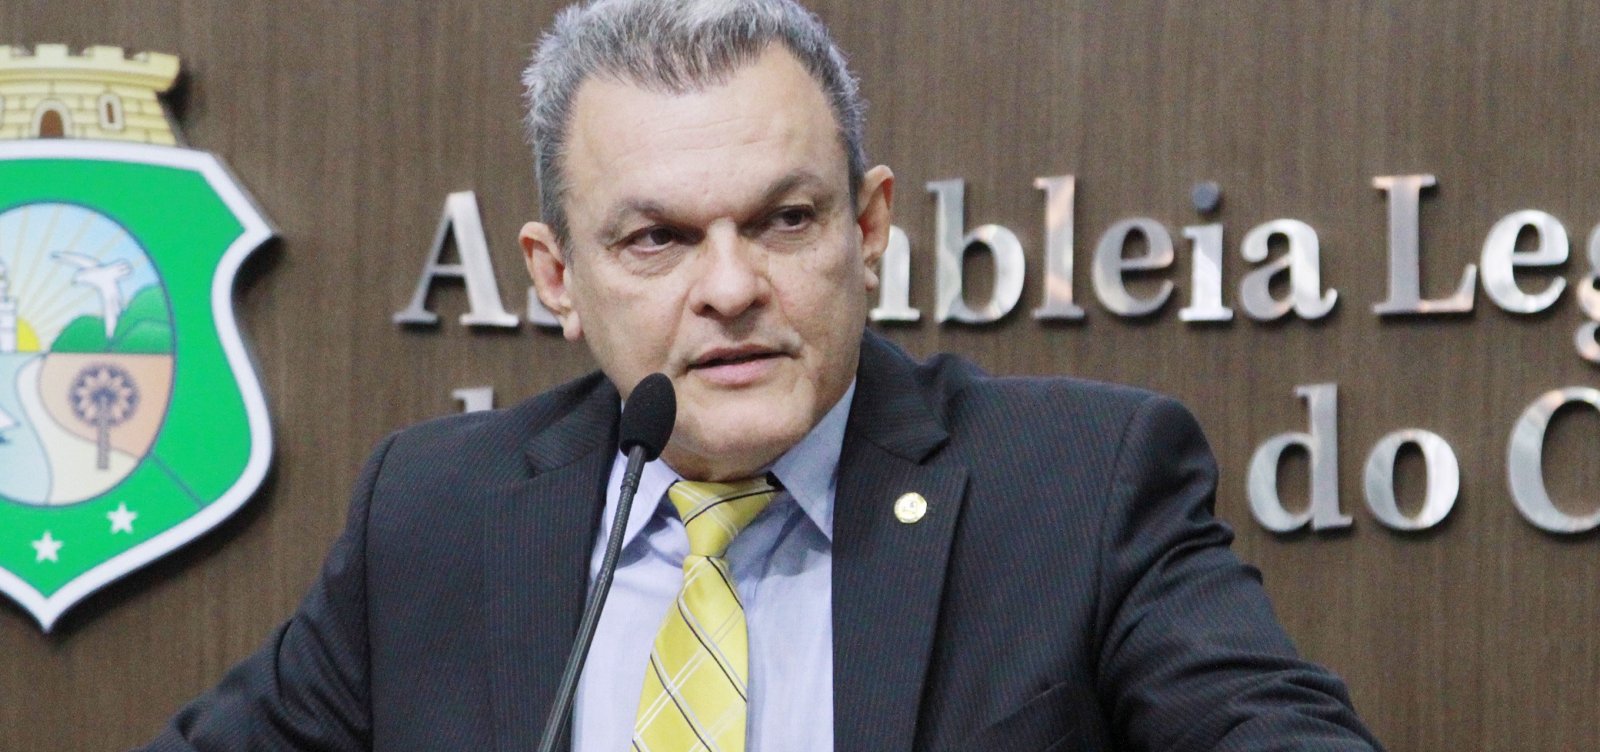 Fortaleza: José Sarto, do PDT, vence disputa e é eleito prefeito 